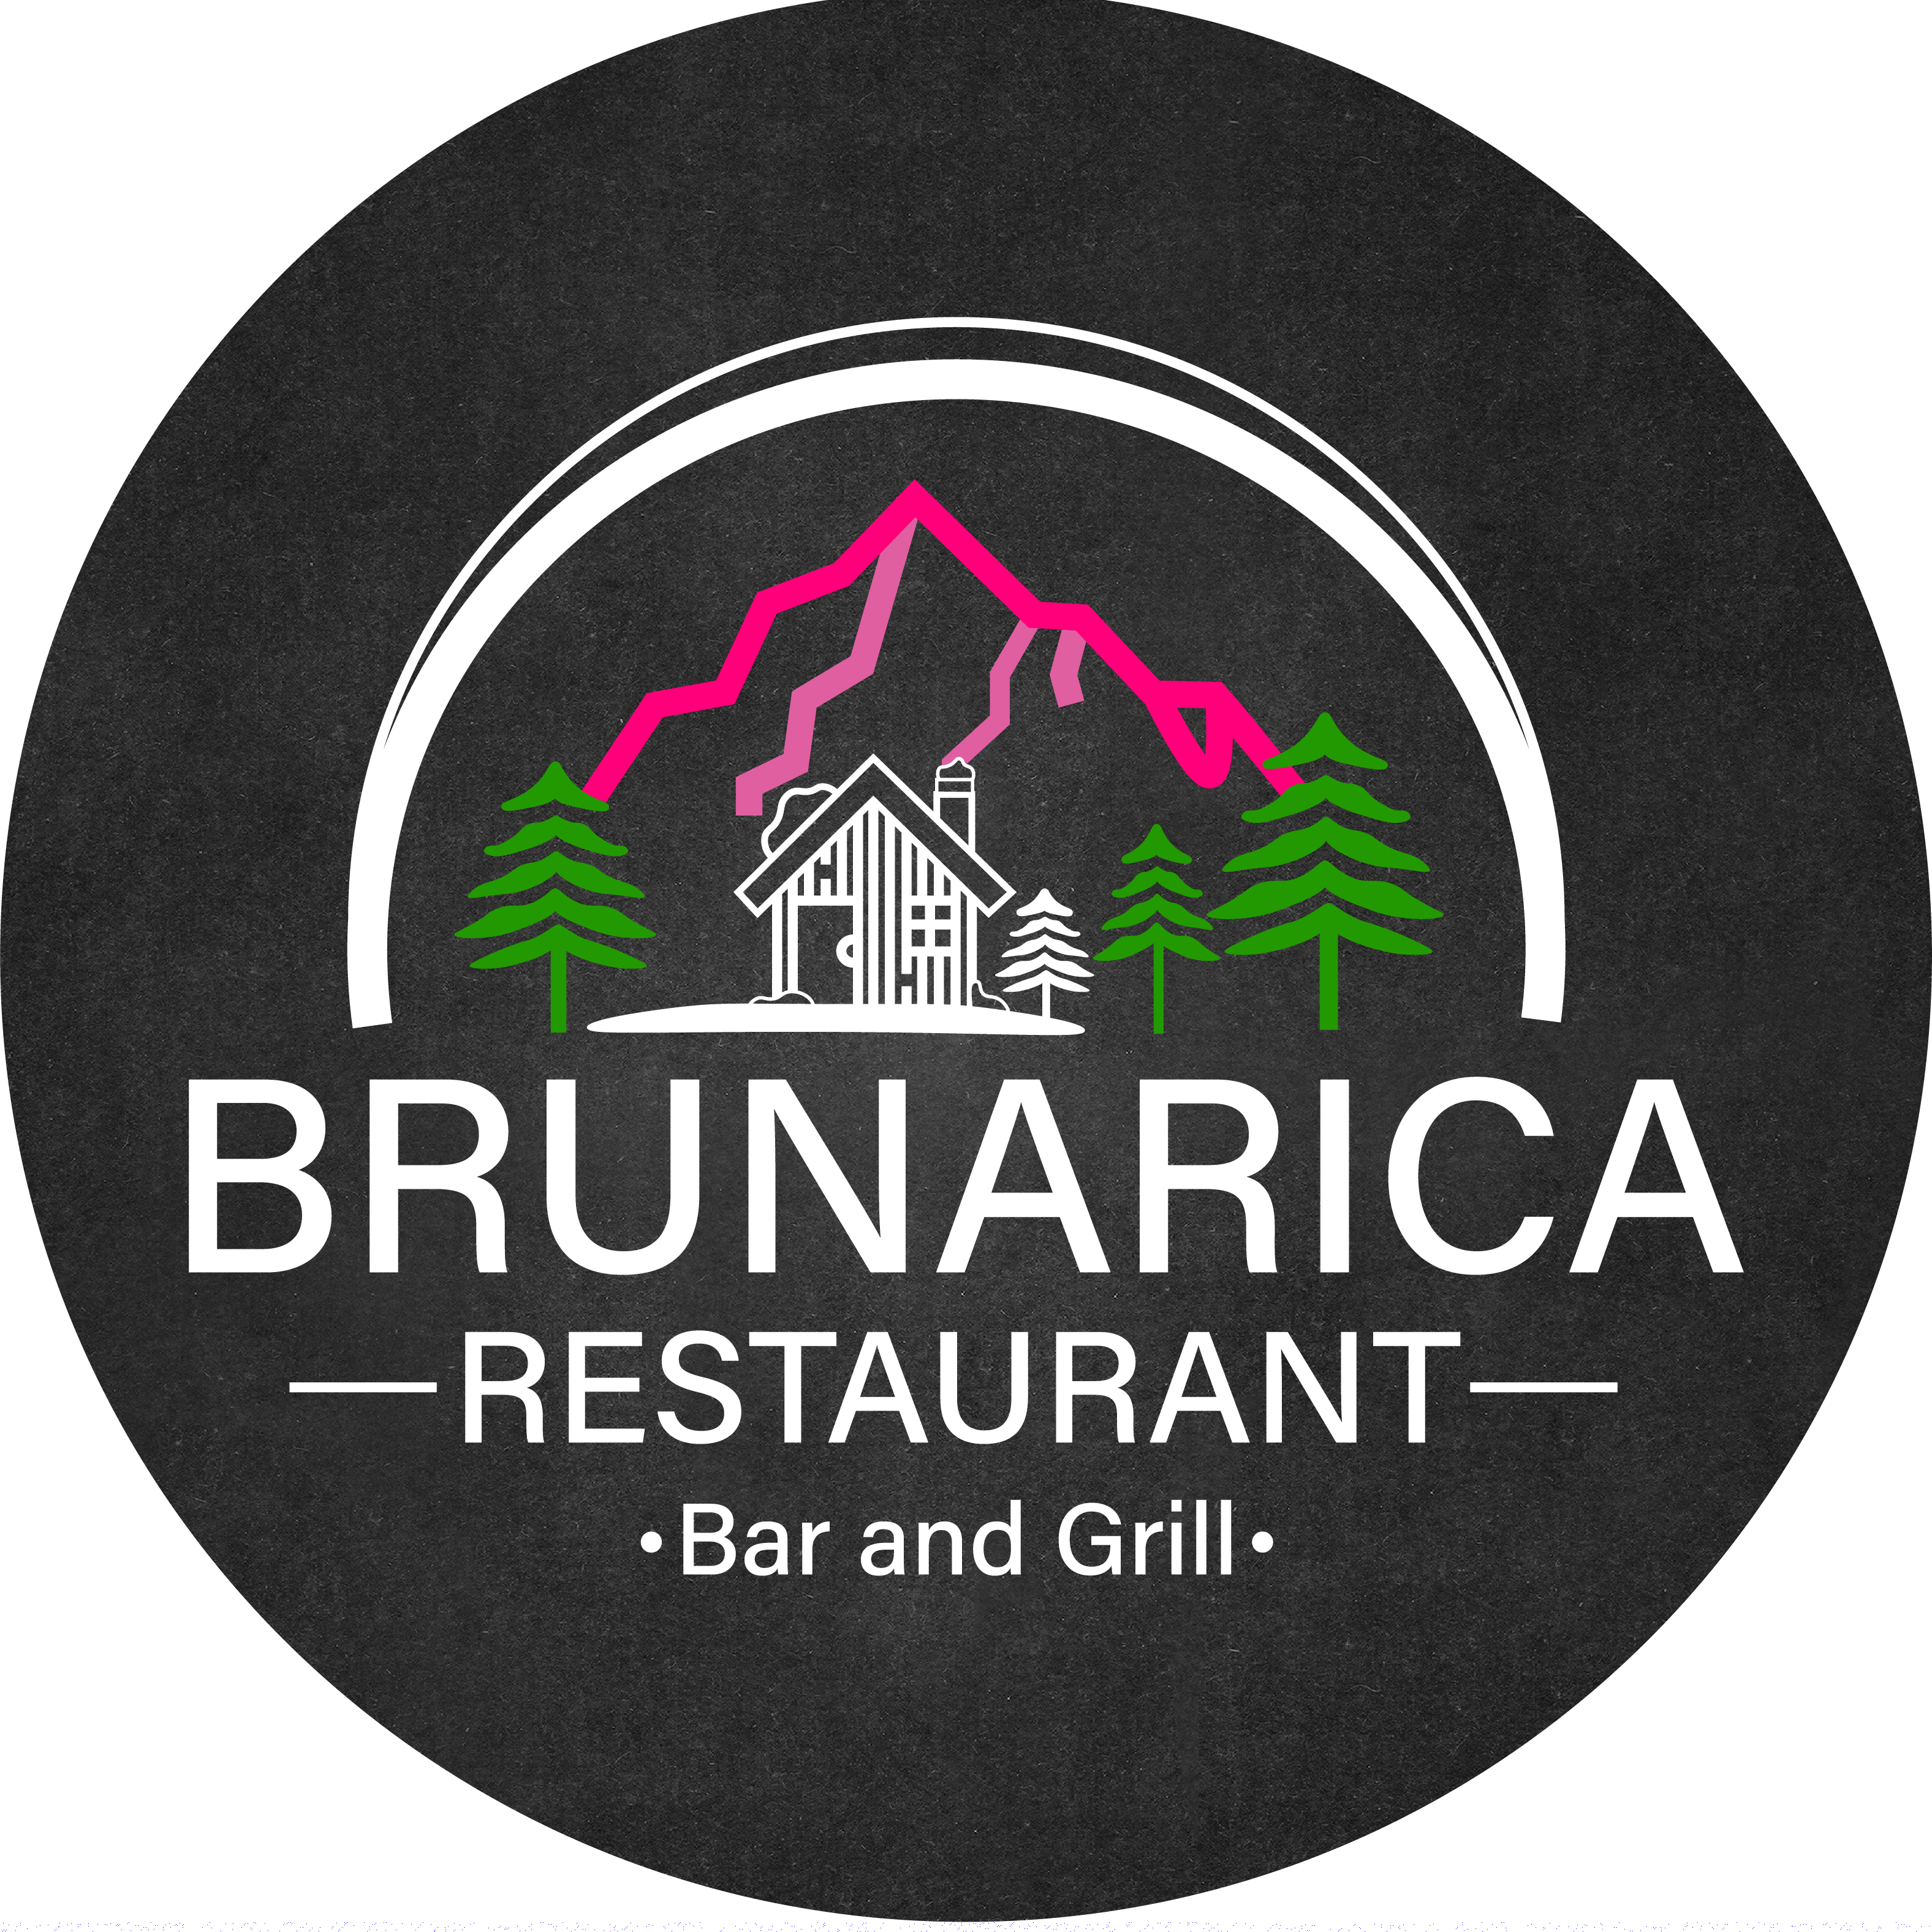 Brunarica Restaurant